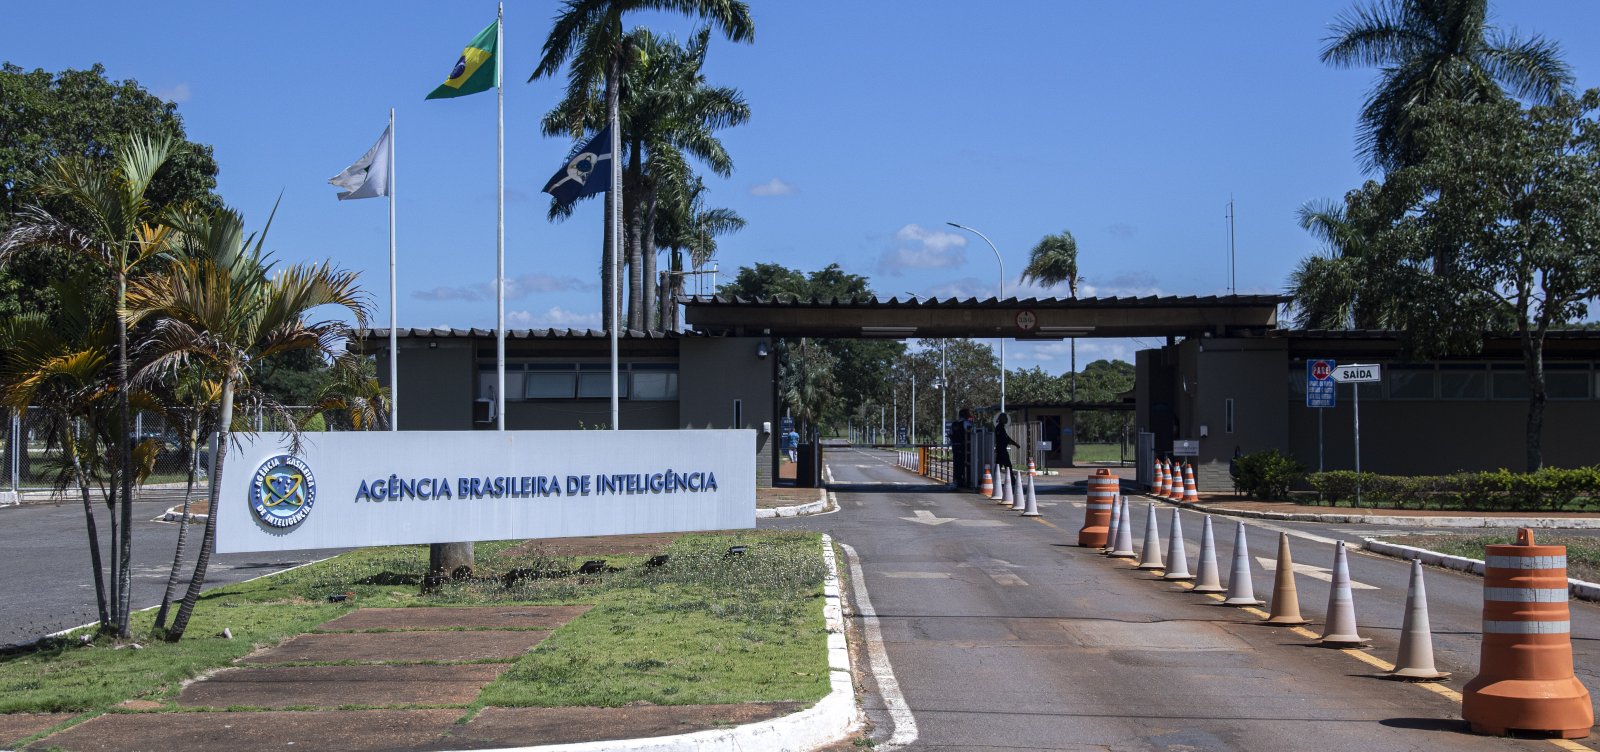 PF cumpre mandado de prisão sobre espionagem ilegal na Abin no governo Bolsonaro 